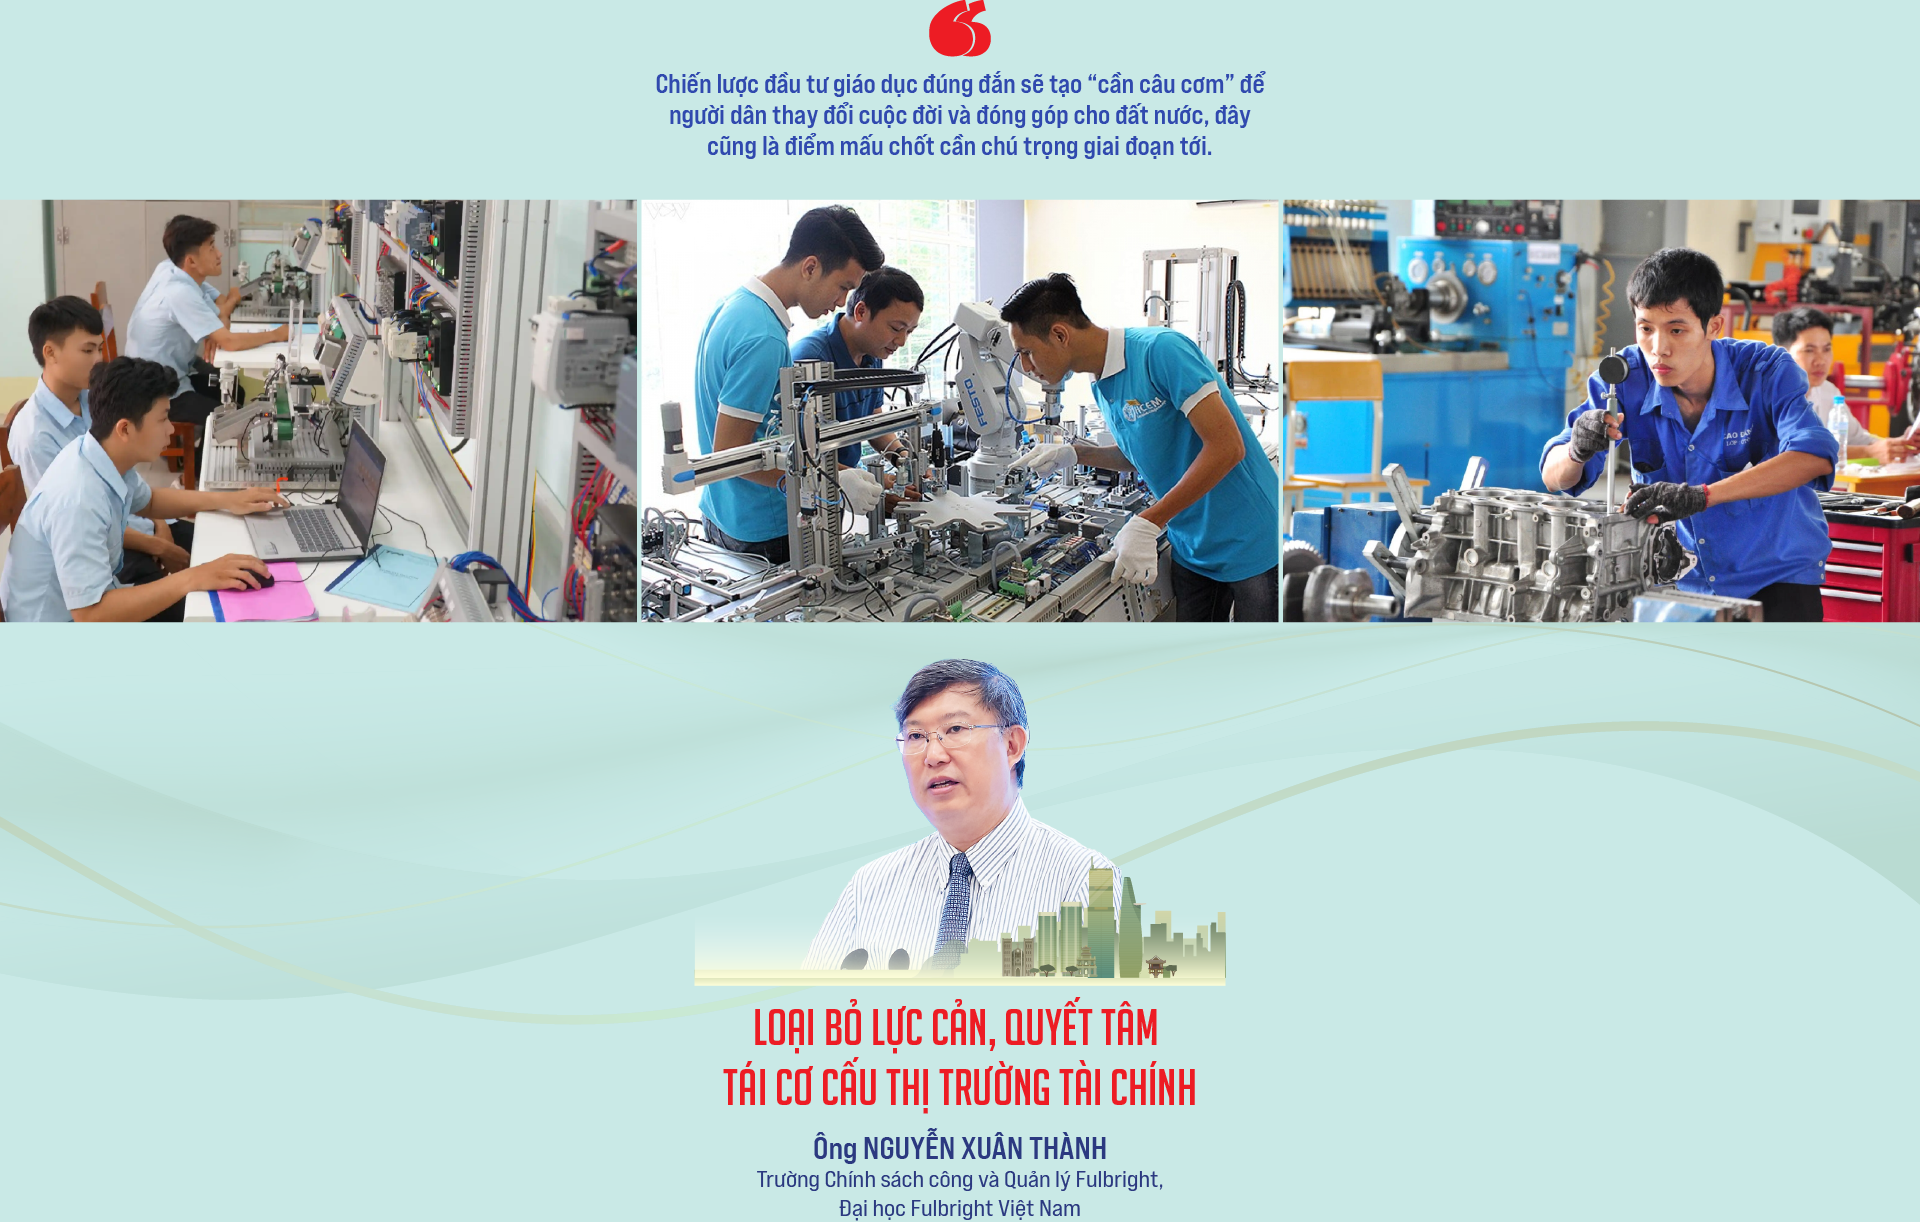 Kinh tế Việt Nam nhìn lại sau gần 40 năm đổi mới - Ảnh 7